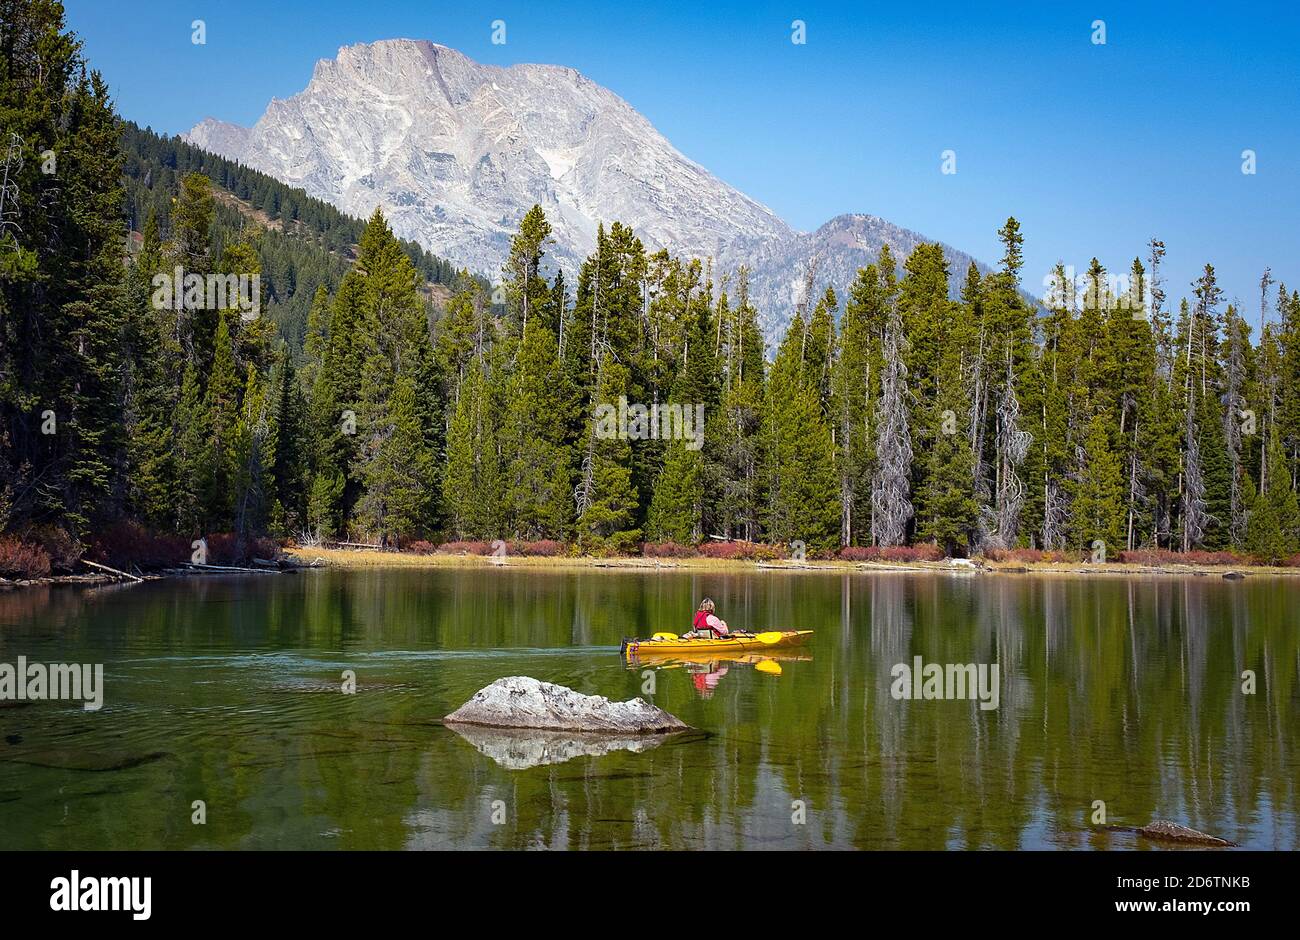 8 octobre 2020 : un kayakiste jouit de la tranquillité du lac String sous l'imposant mont. Moran, parc national de Grand Teton, Jackson, Wyoming. Banque D'Images